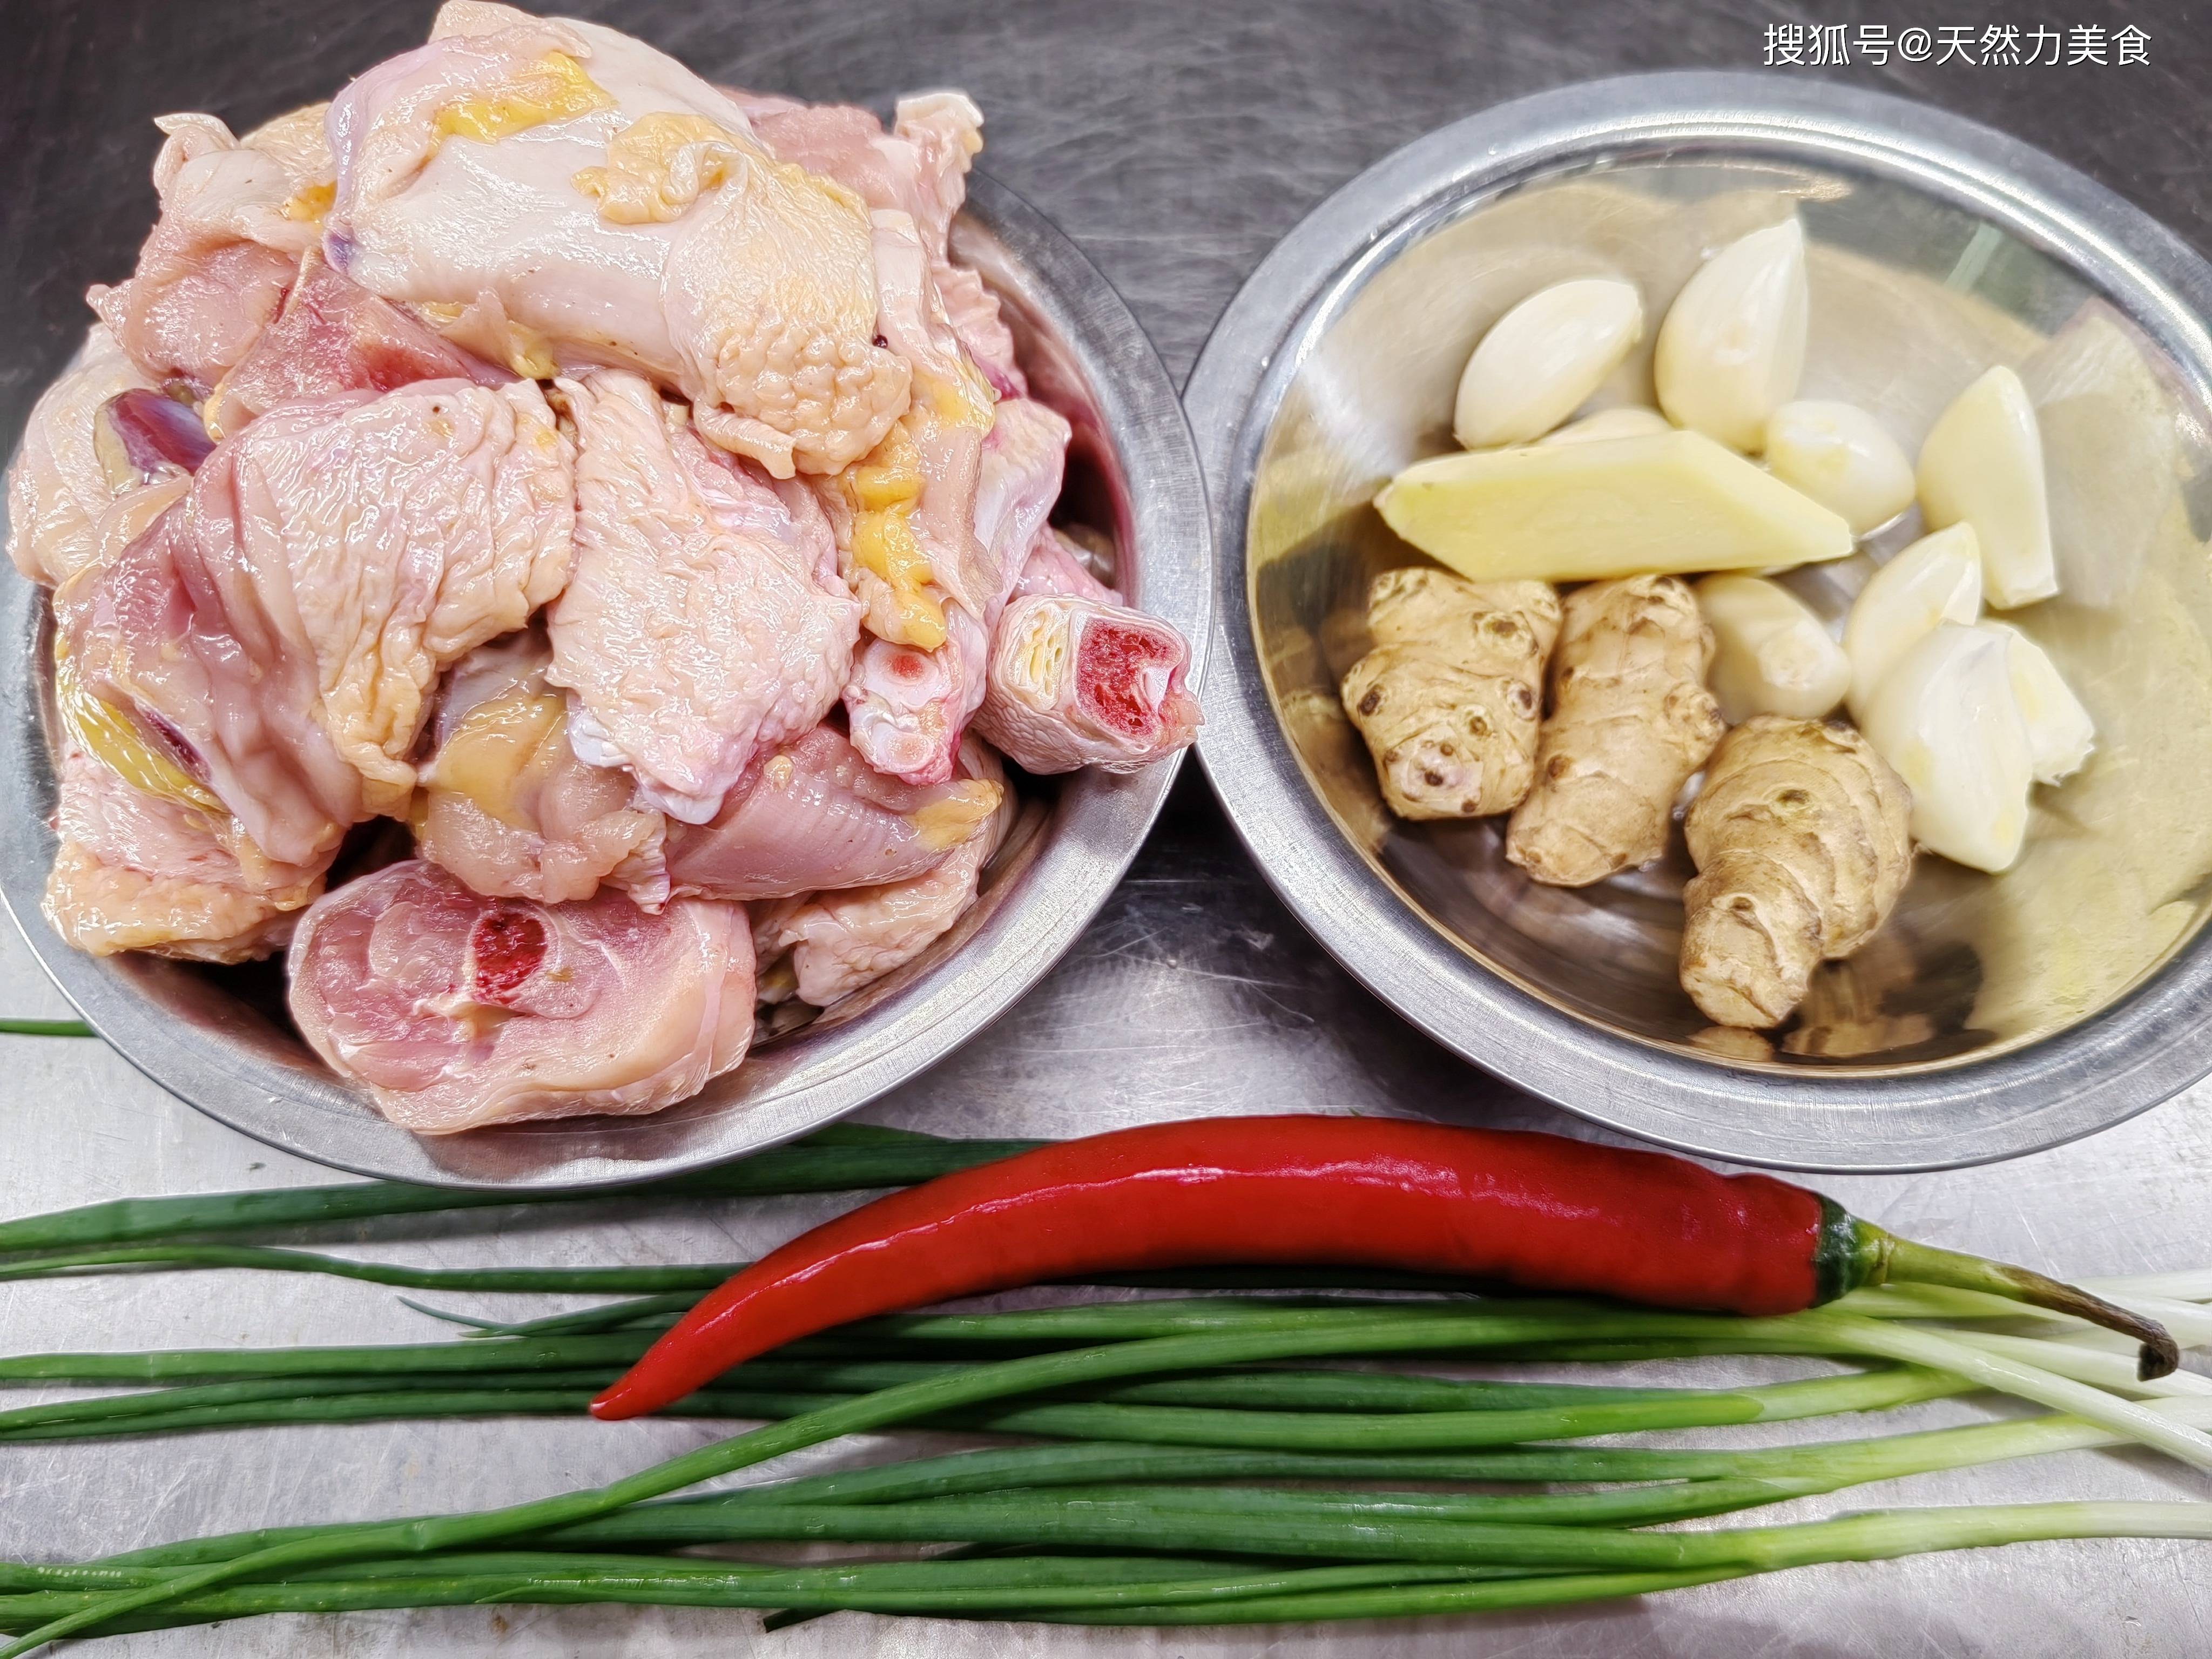 沙姜和鸡肉搭配堪称一绝，沙姜味浓，鸡肉外香里嫩，做法也简单